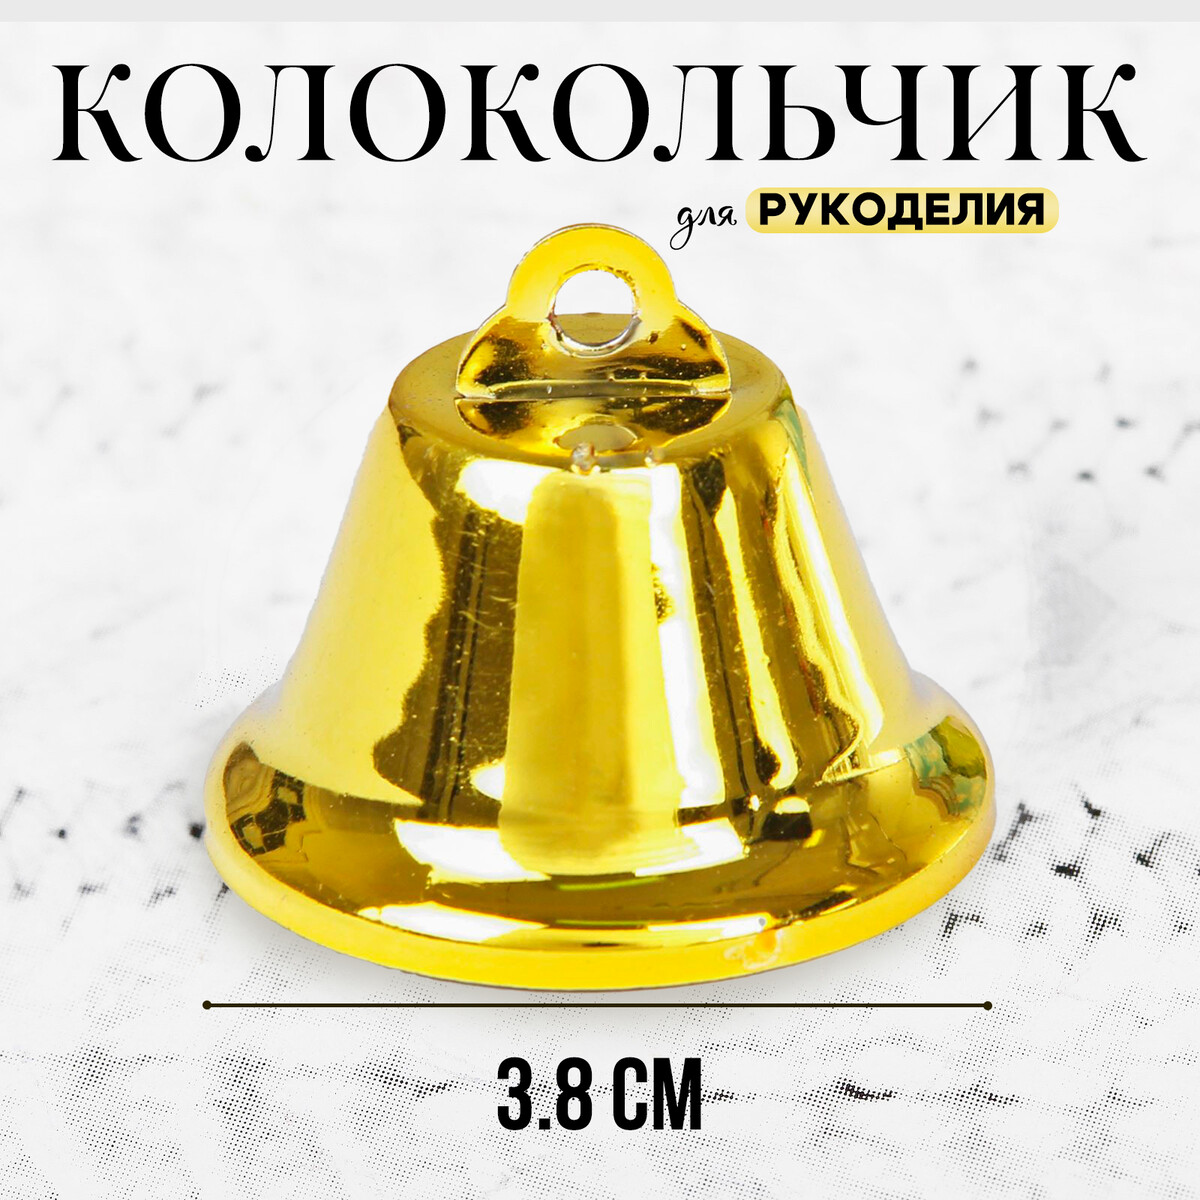 Колокольчик для рукоделия, размер 1 шт. — 3,8 см, цвет золотой колокольчик размер 1 шт 3 8 см желтый